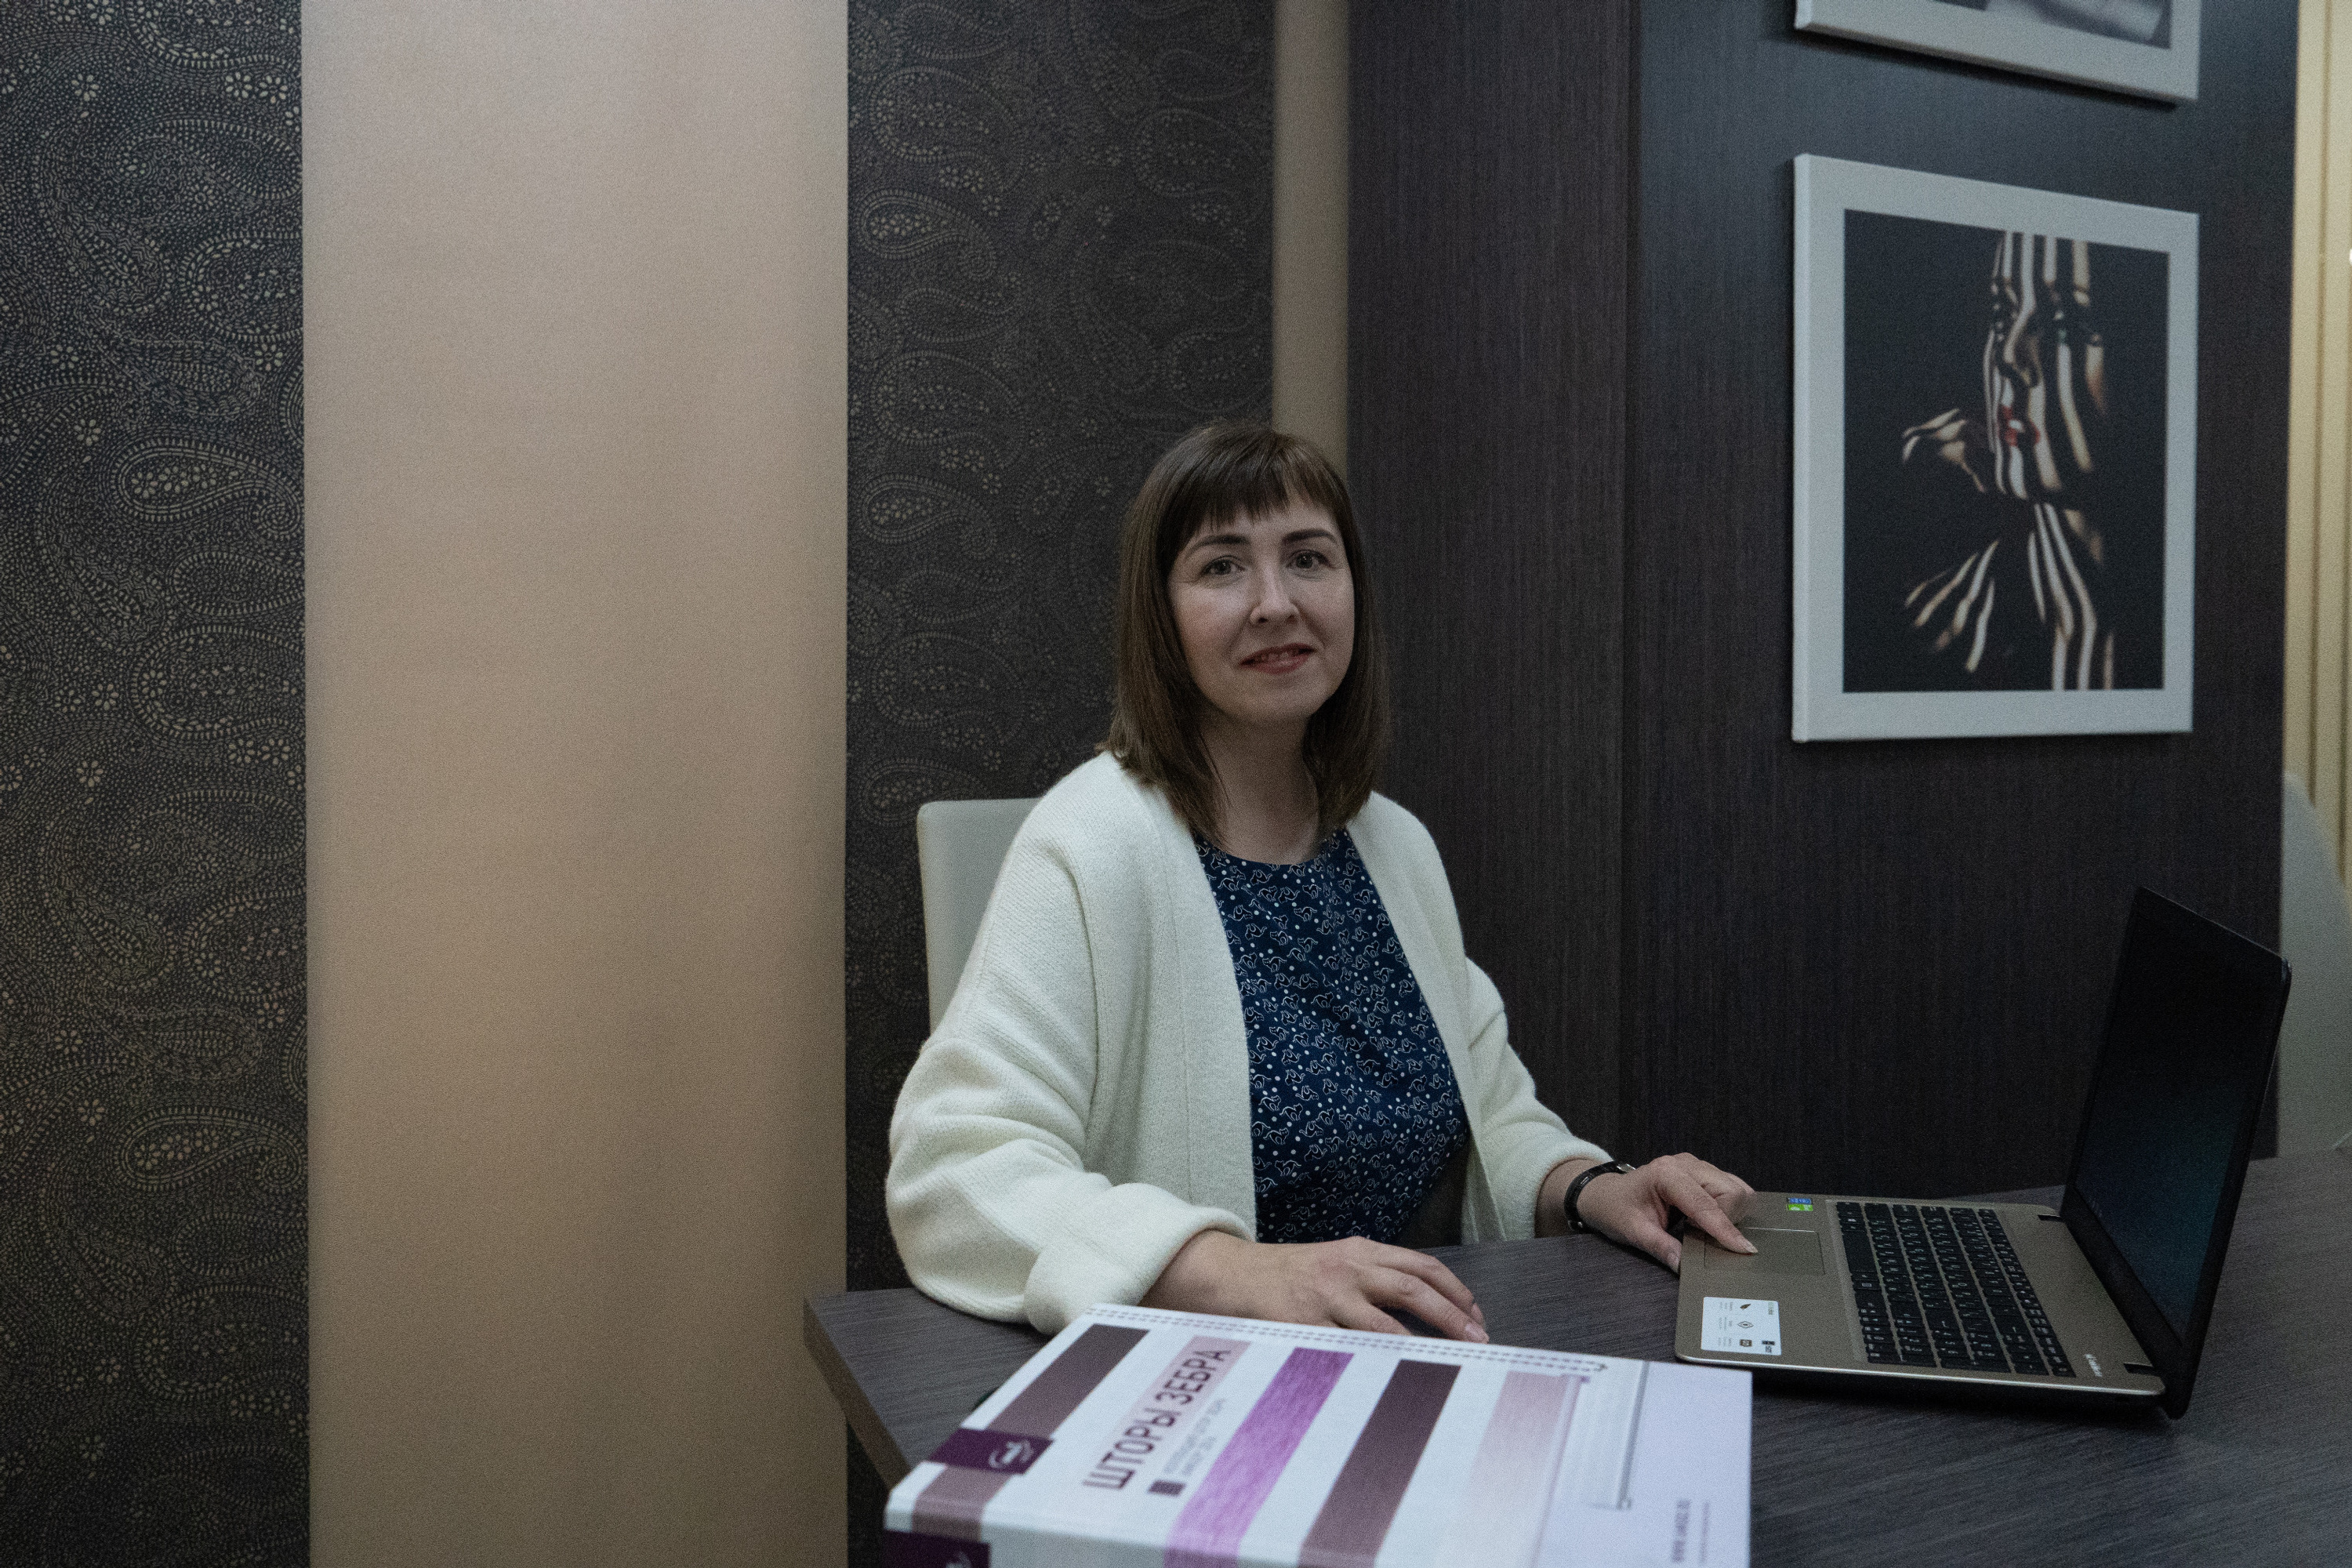 Светлана Викторовна Кузьмина — одна из соучредителей фирмы, в компании она занимает должность коммерческого директора